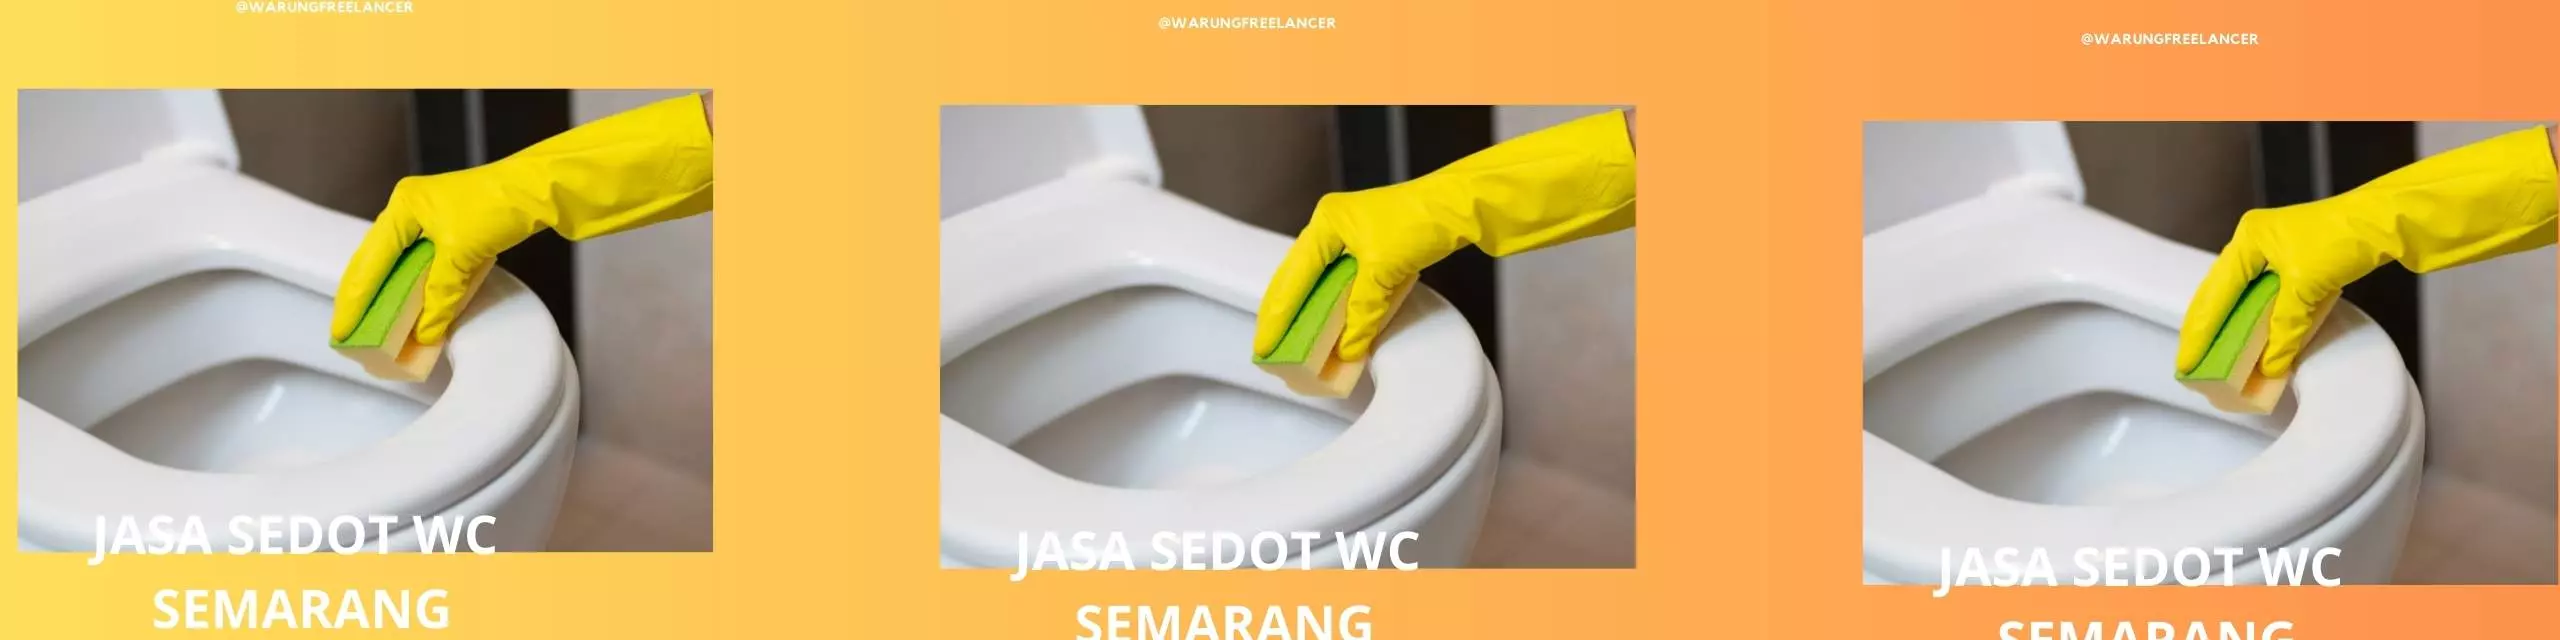 Jasa Sedot WC Semarang